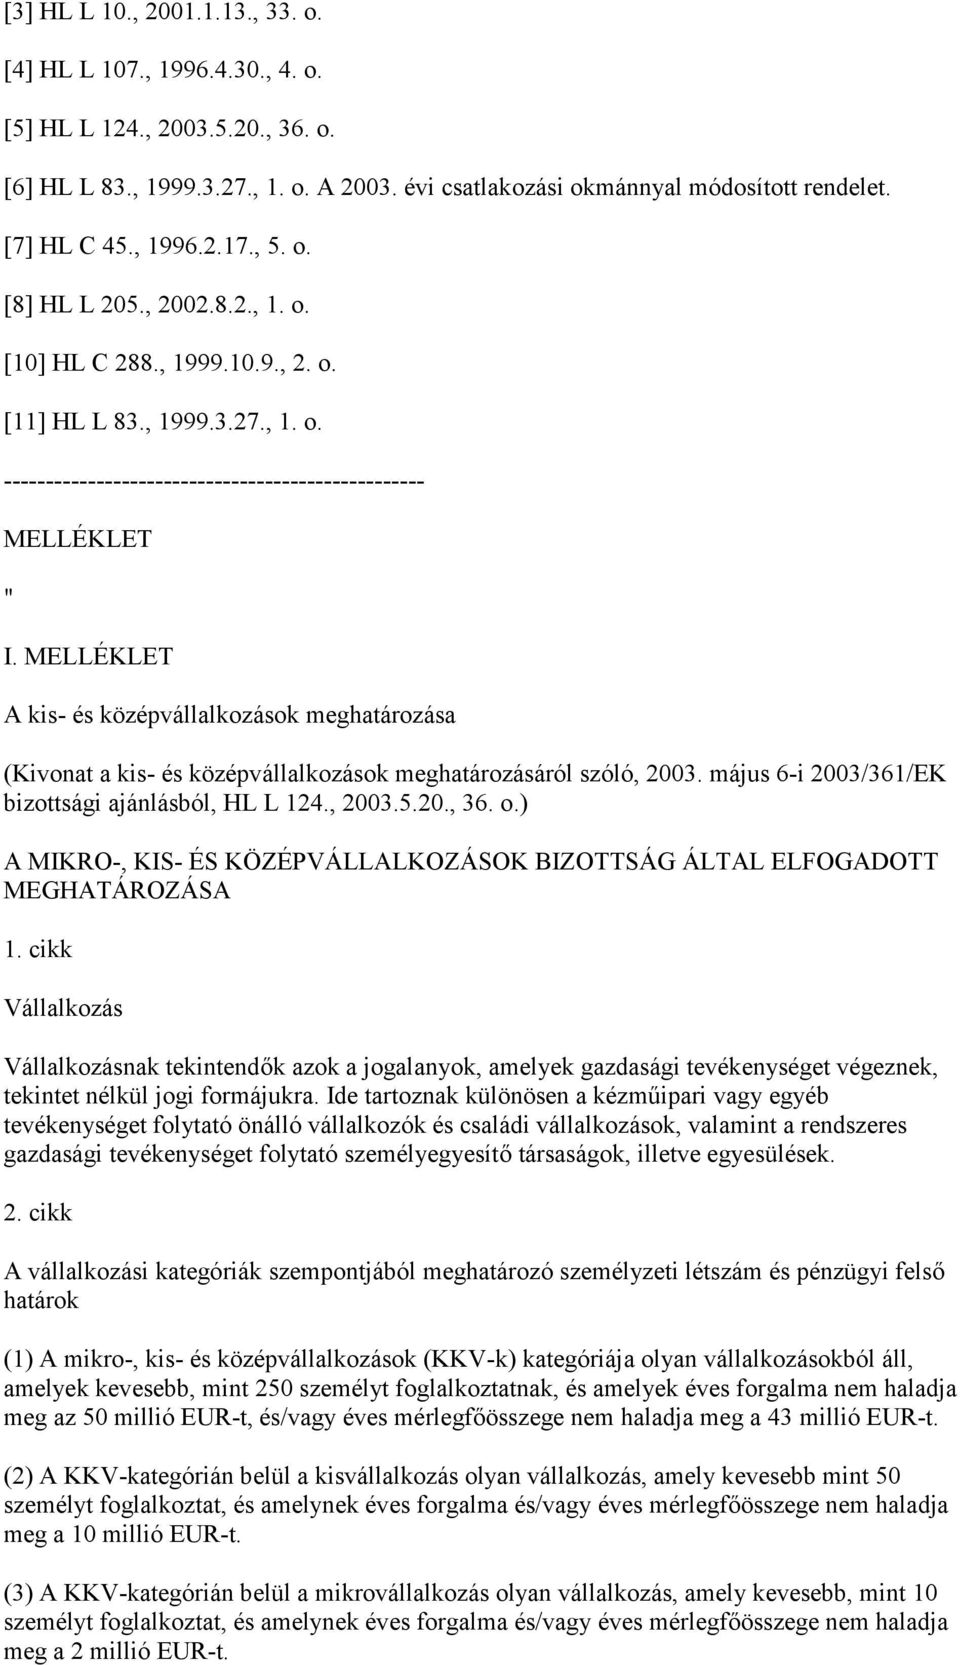 MELLÉKLET A kis- és középvállalkozások meghatározása (Kivonat a kis- és középvállalkozások meghatározásáról szóló, 2003. május 6-i 2003/361/EK bizottsági ajánlásból, HL L 124., 2003.5.20., 36. o.